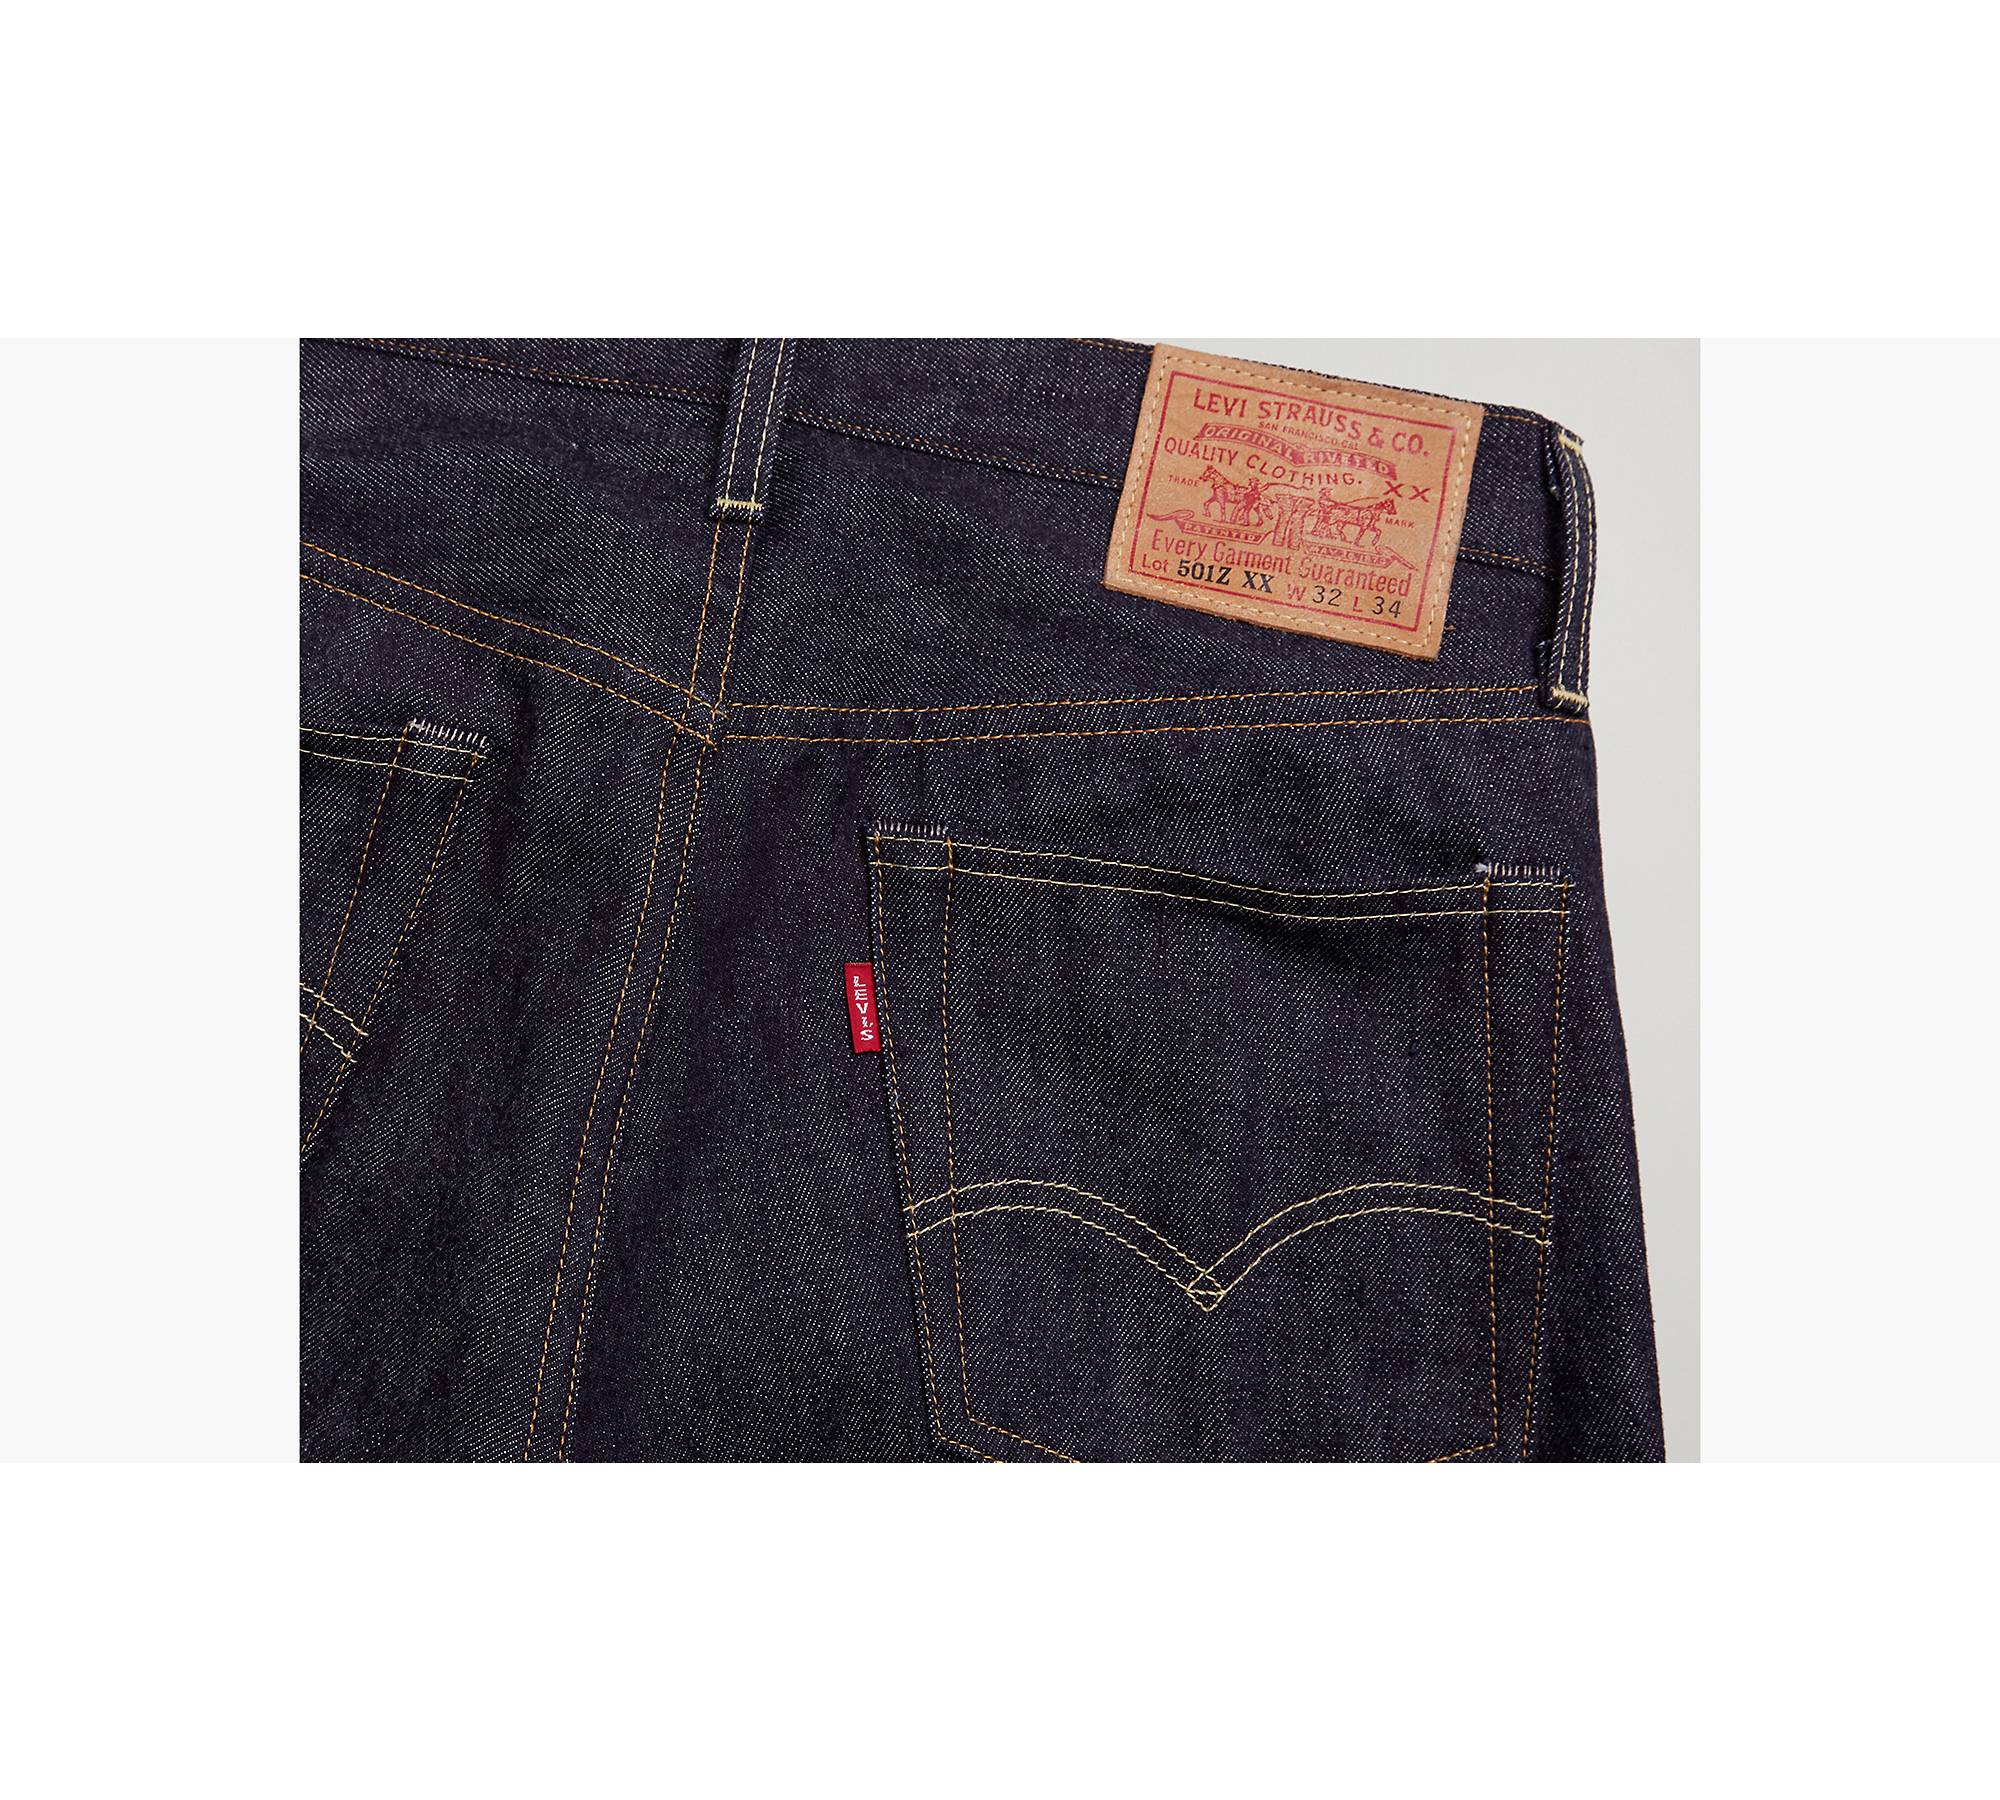 Levi's 1954 501 Vintage Jeans - Men's - Coxsone 30